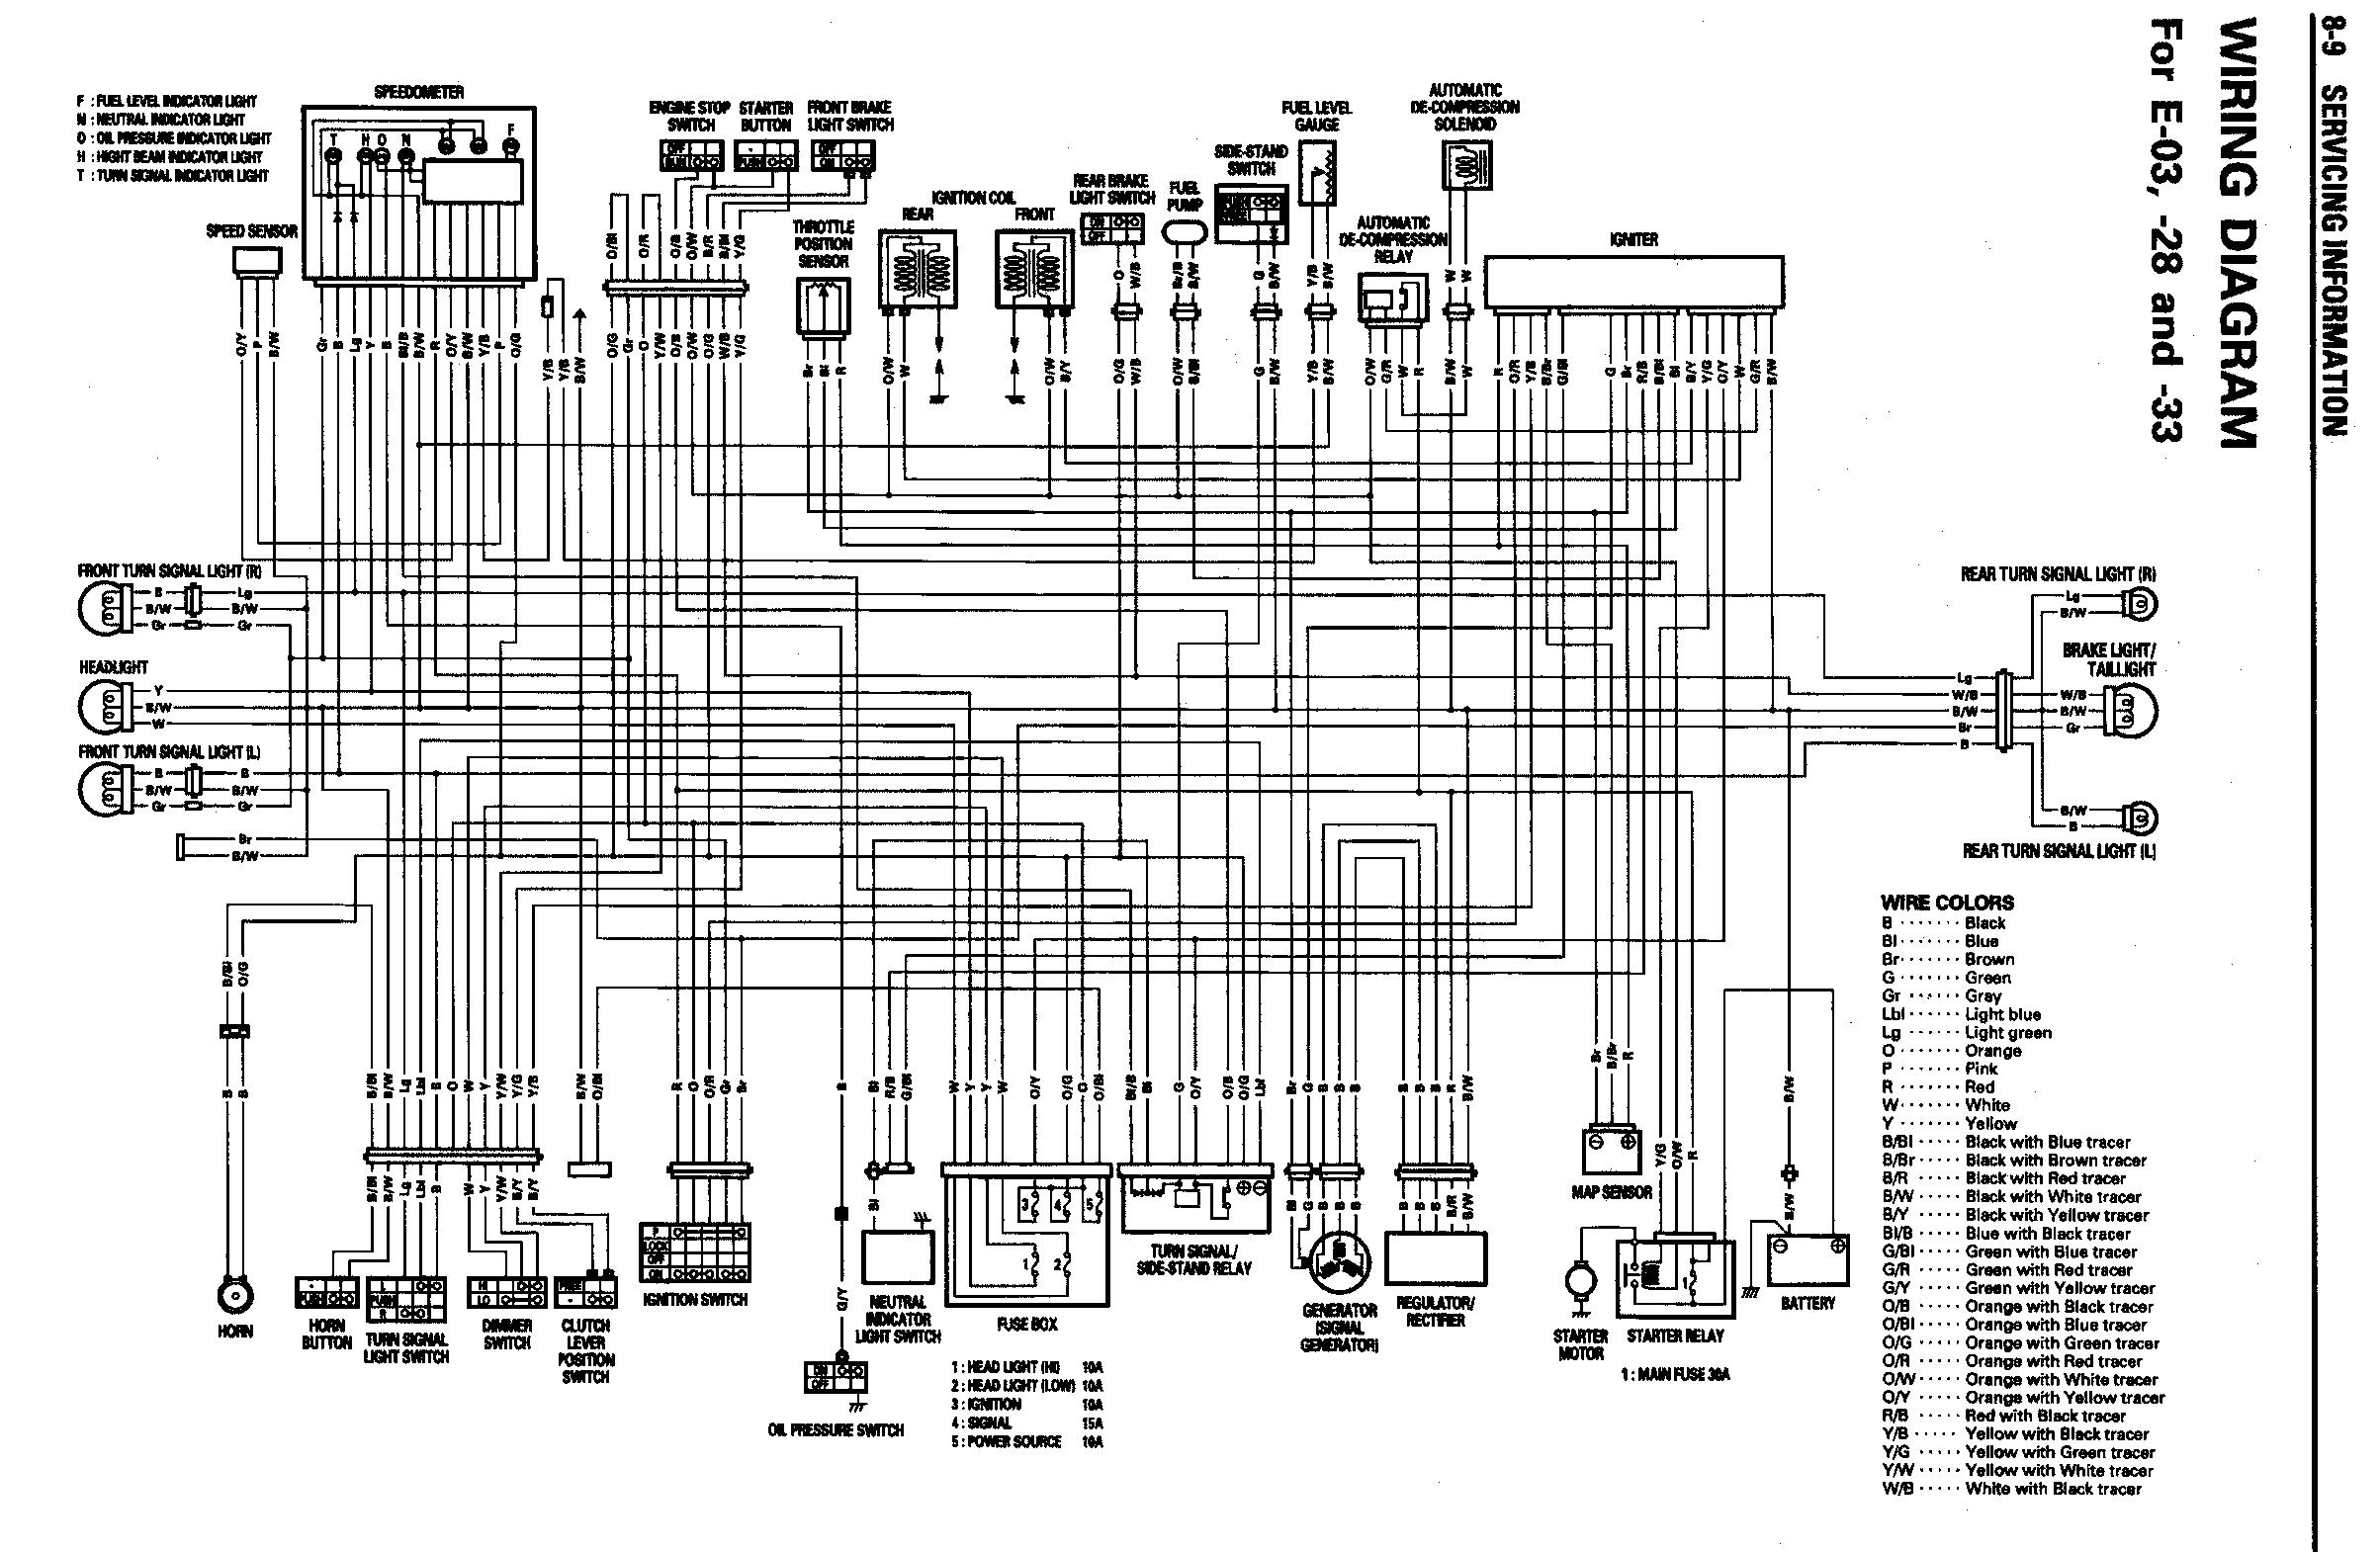 Wiring Diagram Suzuki Intruder 800 - Wiring Diagram